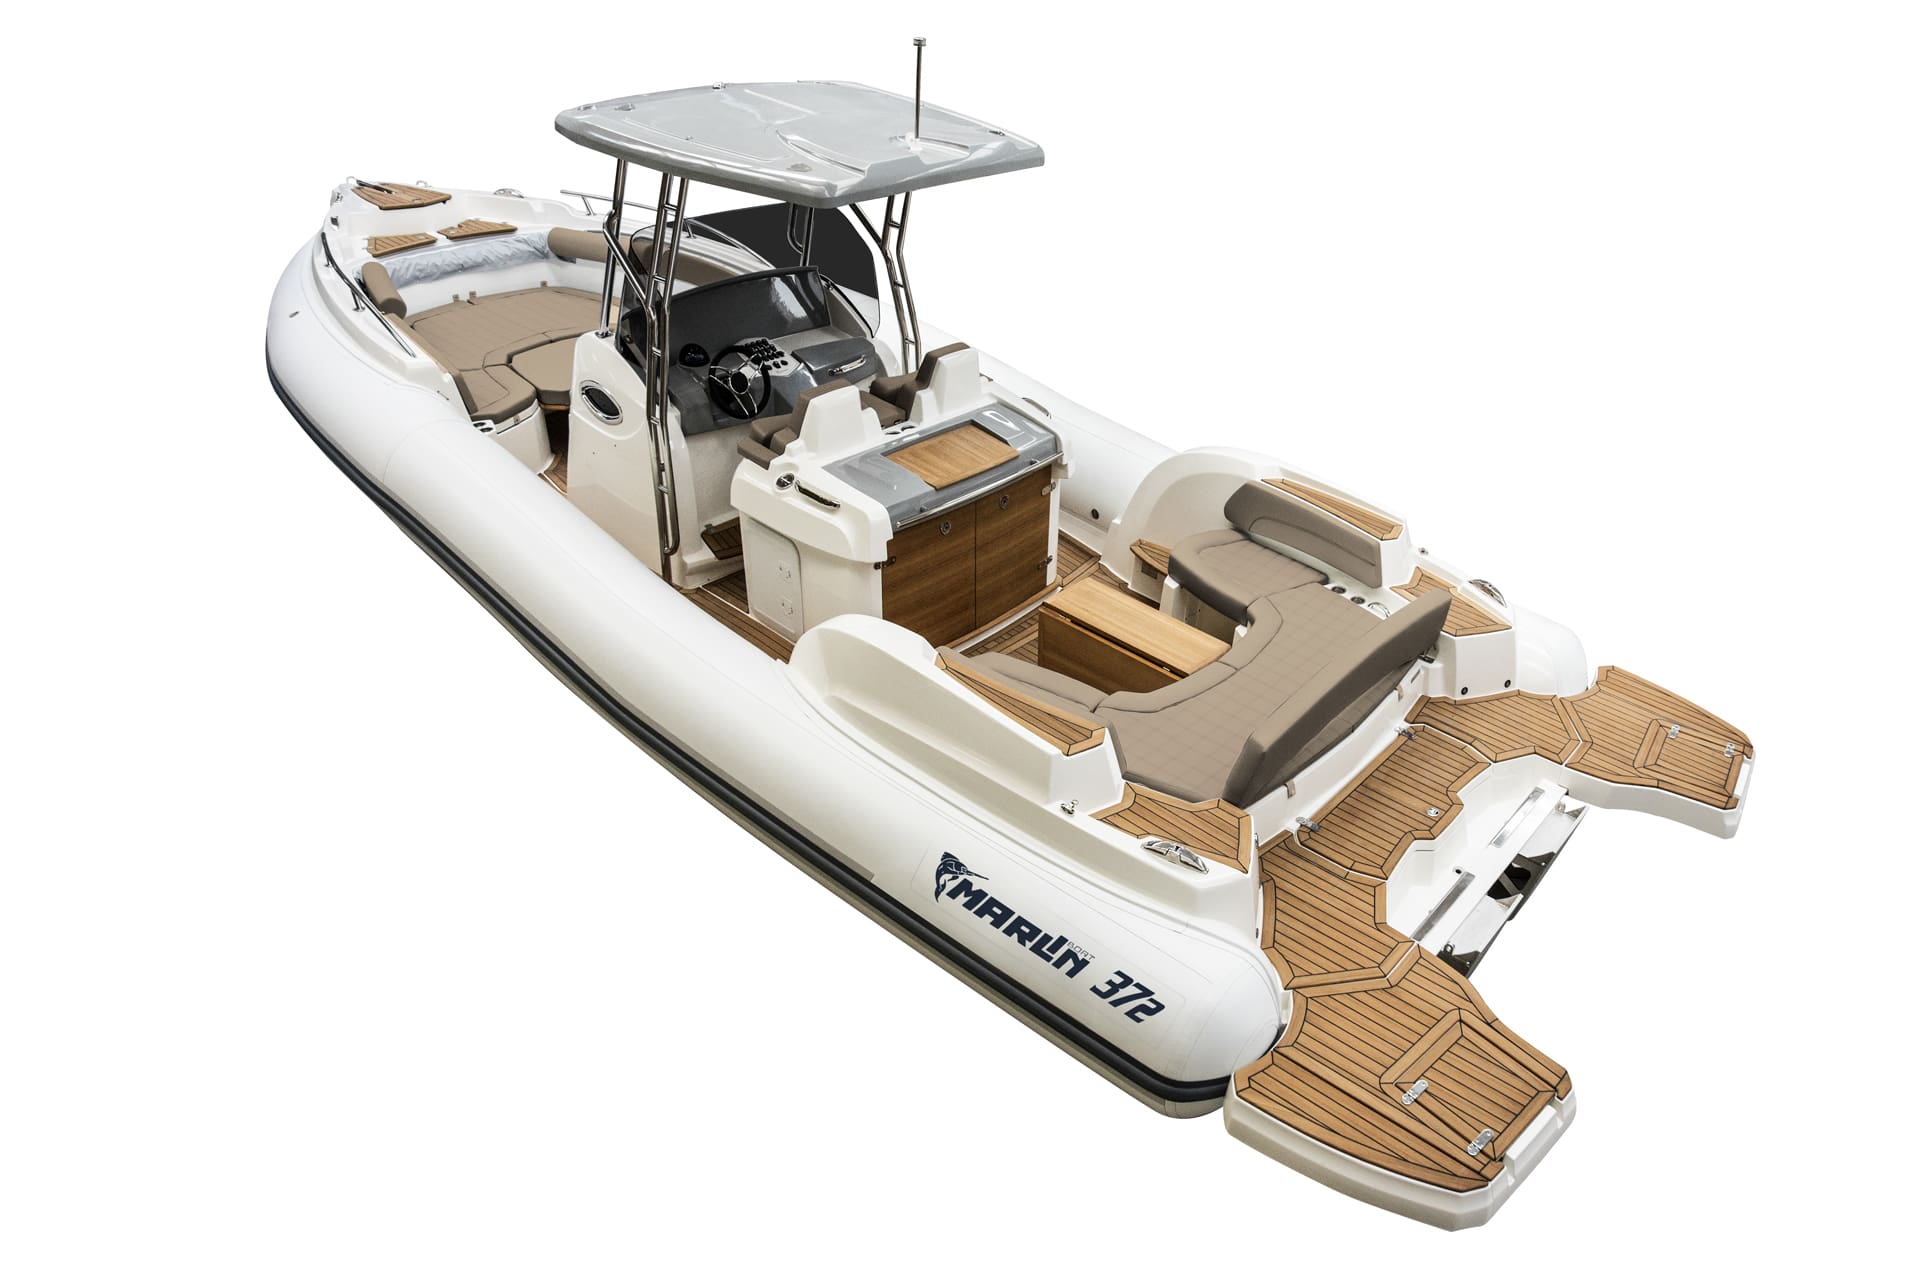 Marlin Boat - Gommone Fuoribordo Modello 372